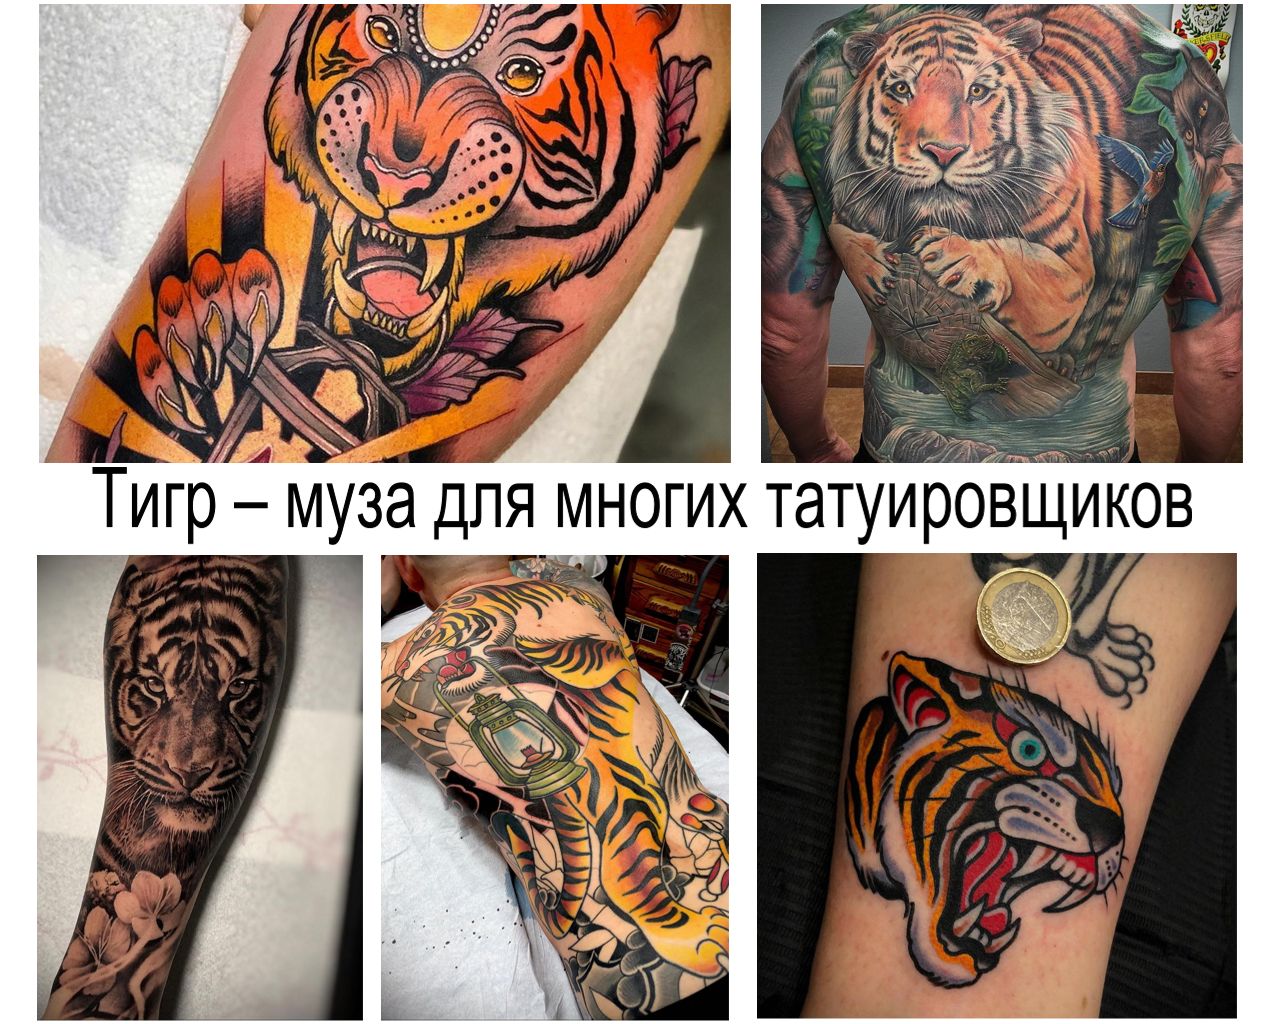 Тигр – король джунглей и муза для многих татуировщиков